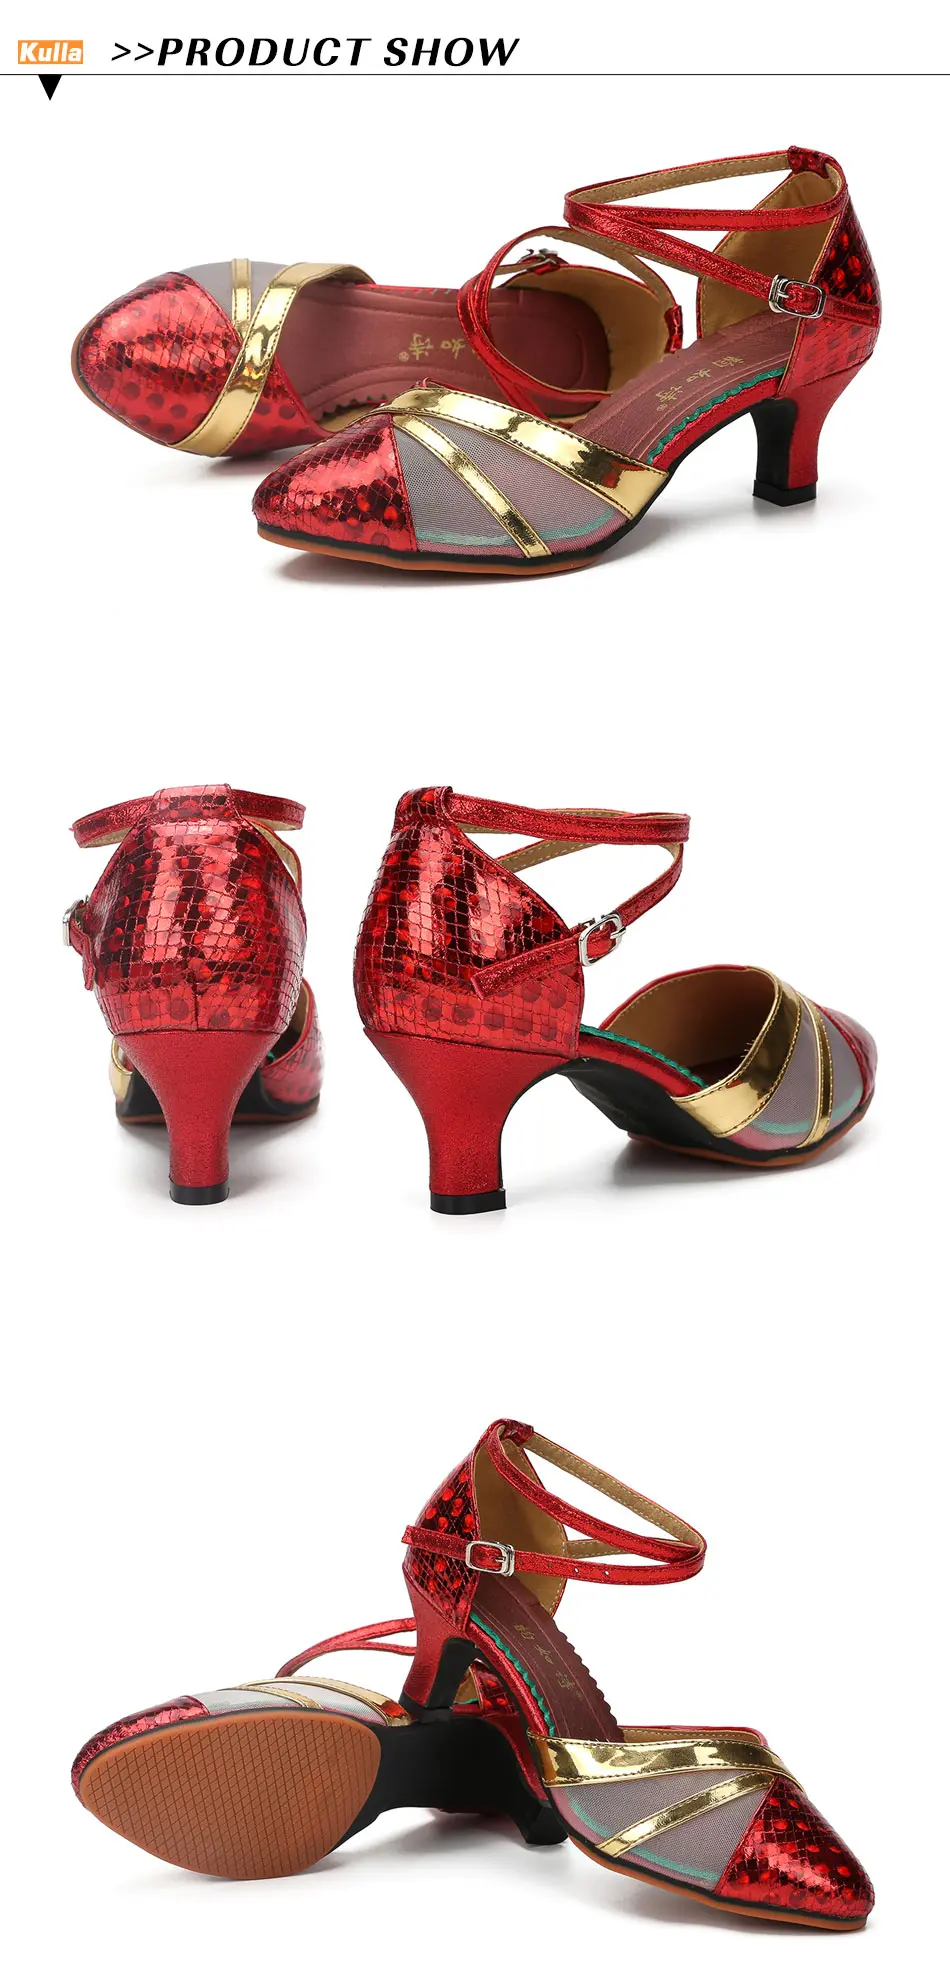 Танцевальная обувь для сальсы, женская обувь красного, золотого, коричневого цвета с закрытым носком для бальных танцев, латинских танцев